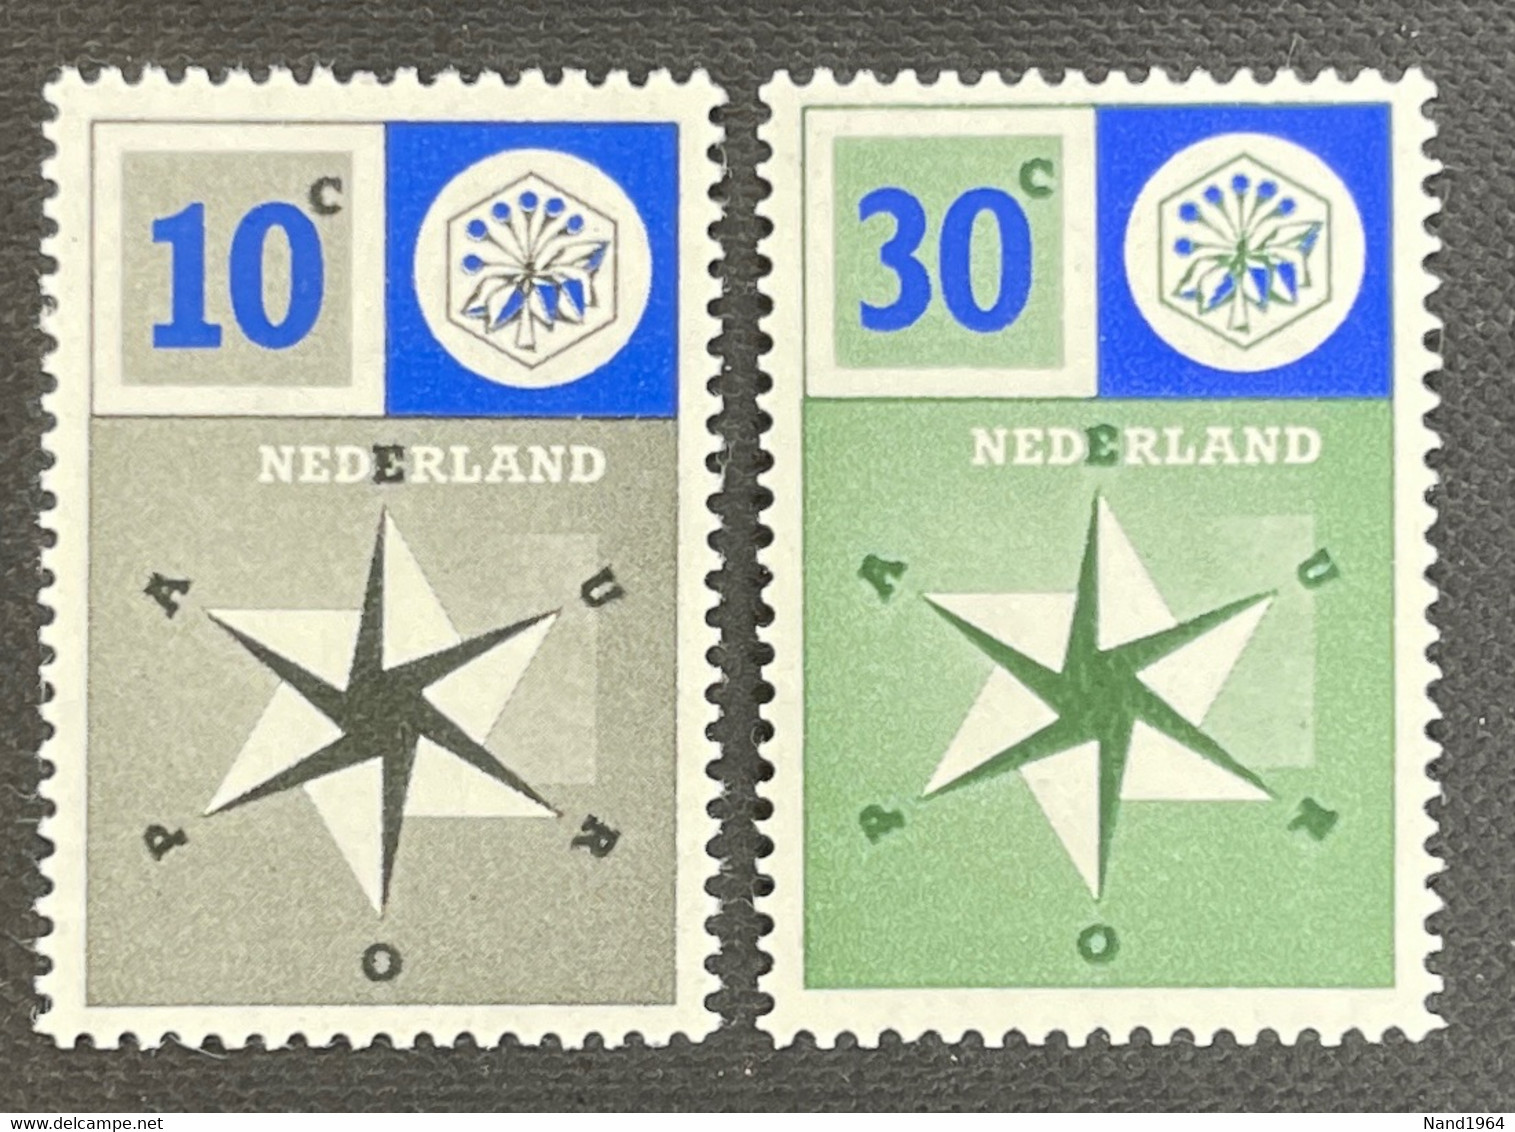 Europa CEPT 1957 Postfris - 1956